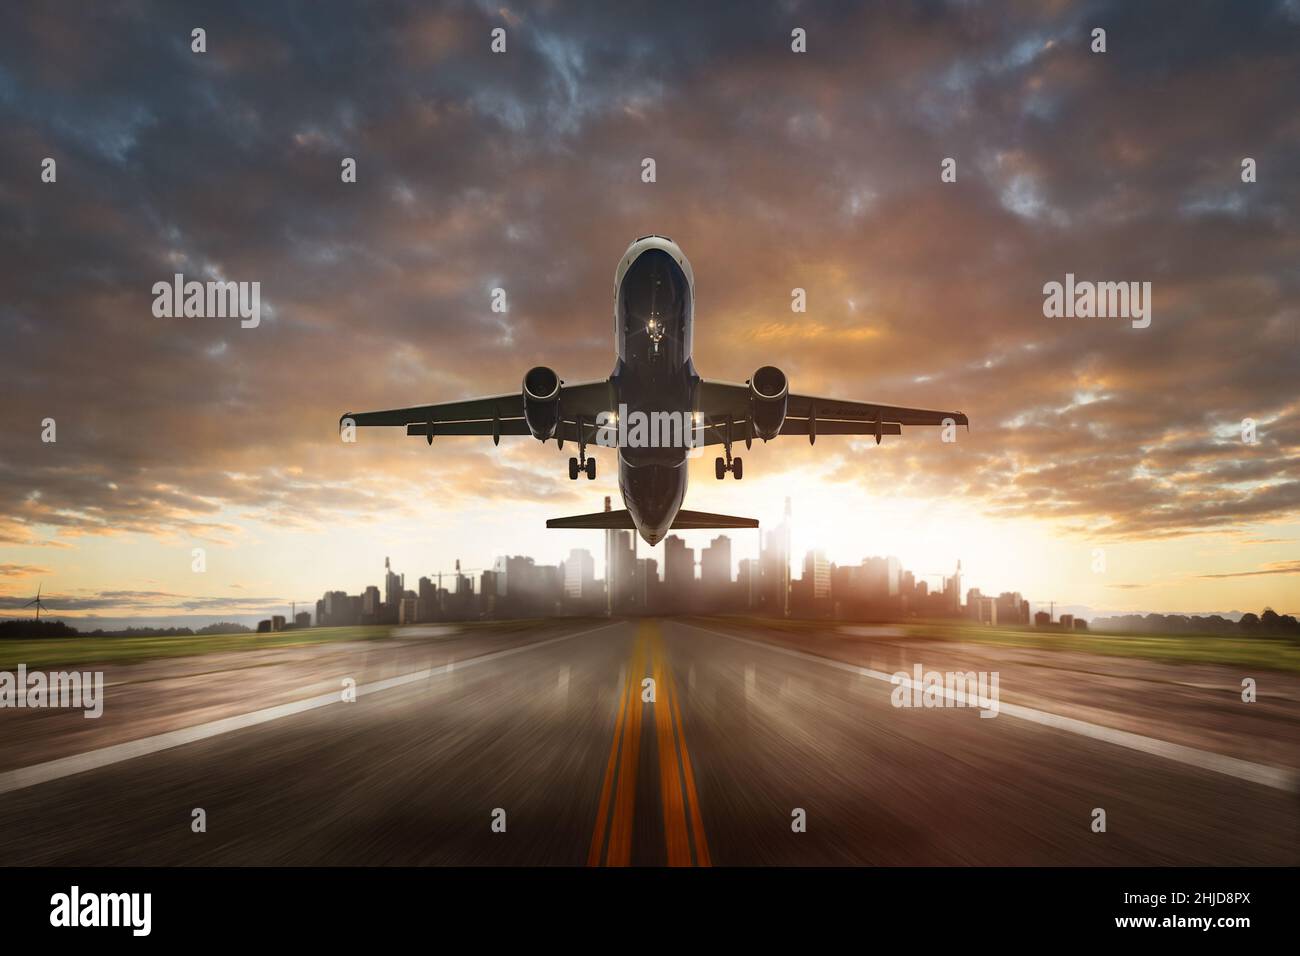 airplane take off landing flight Stock Photo